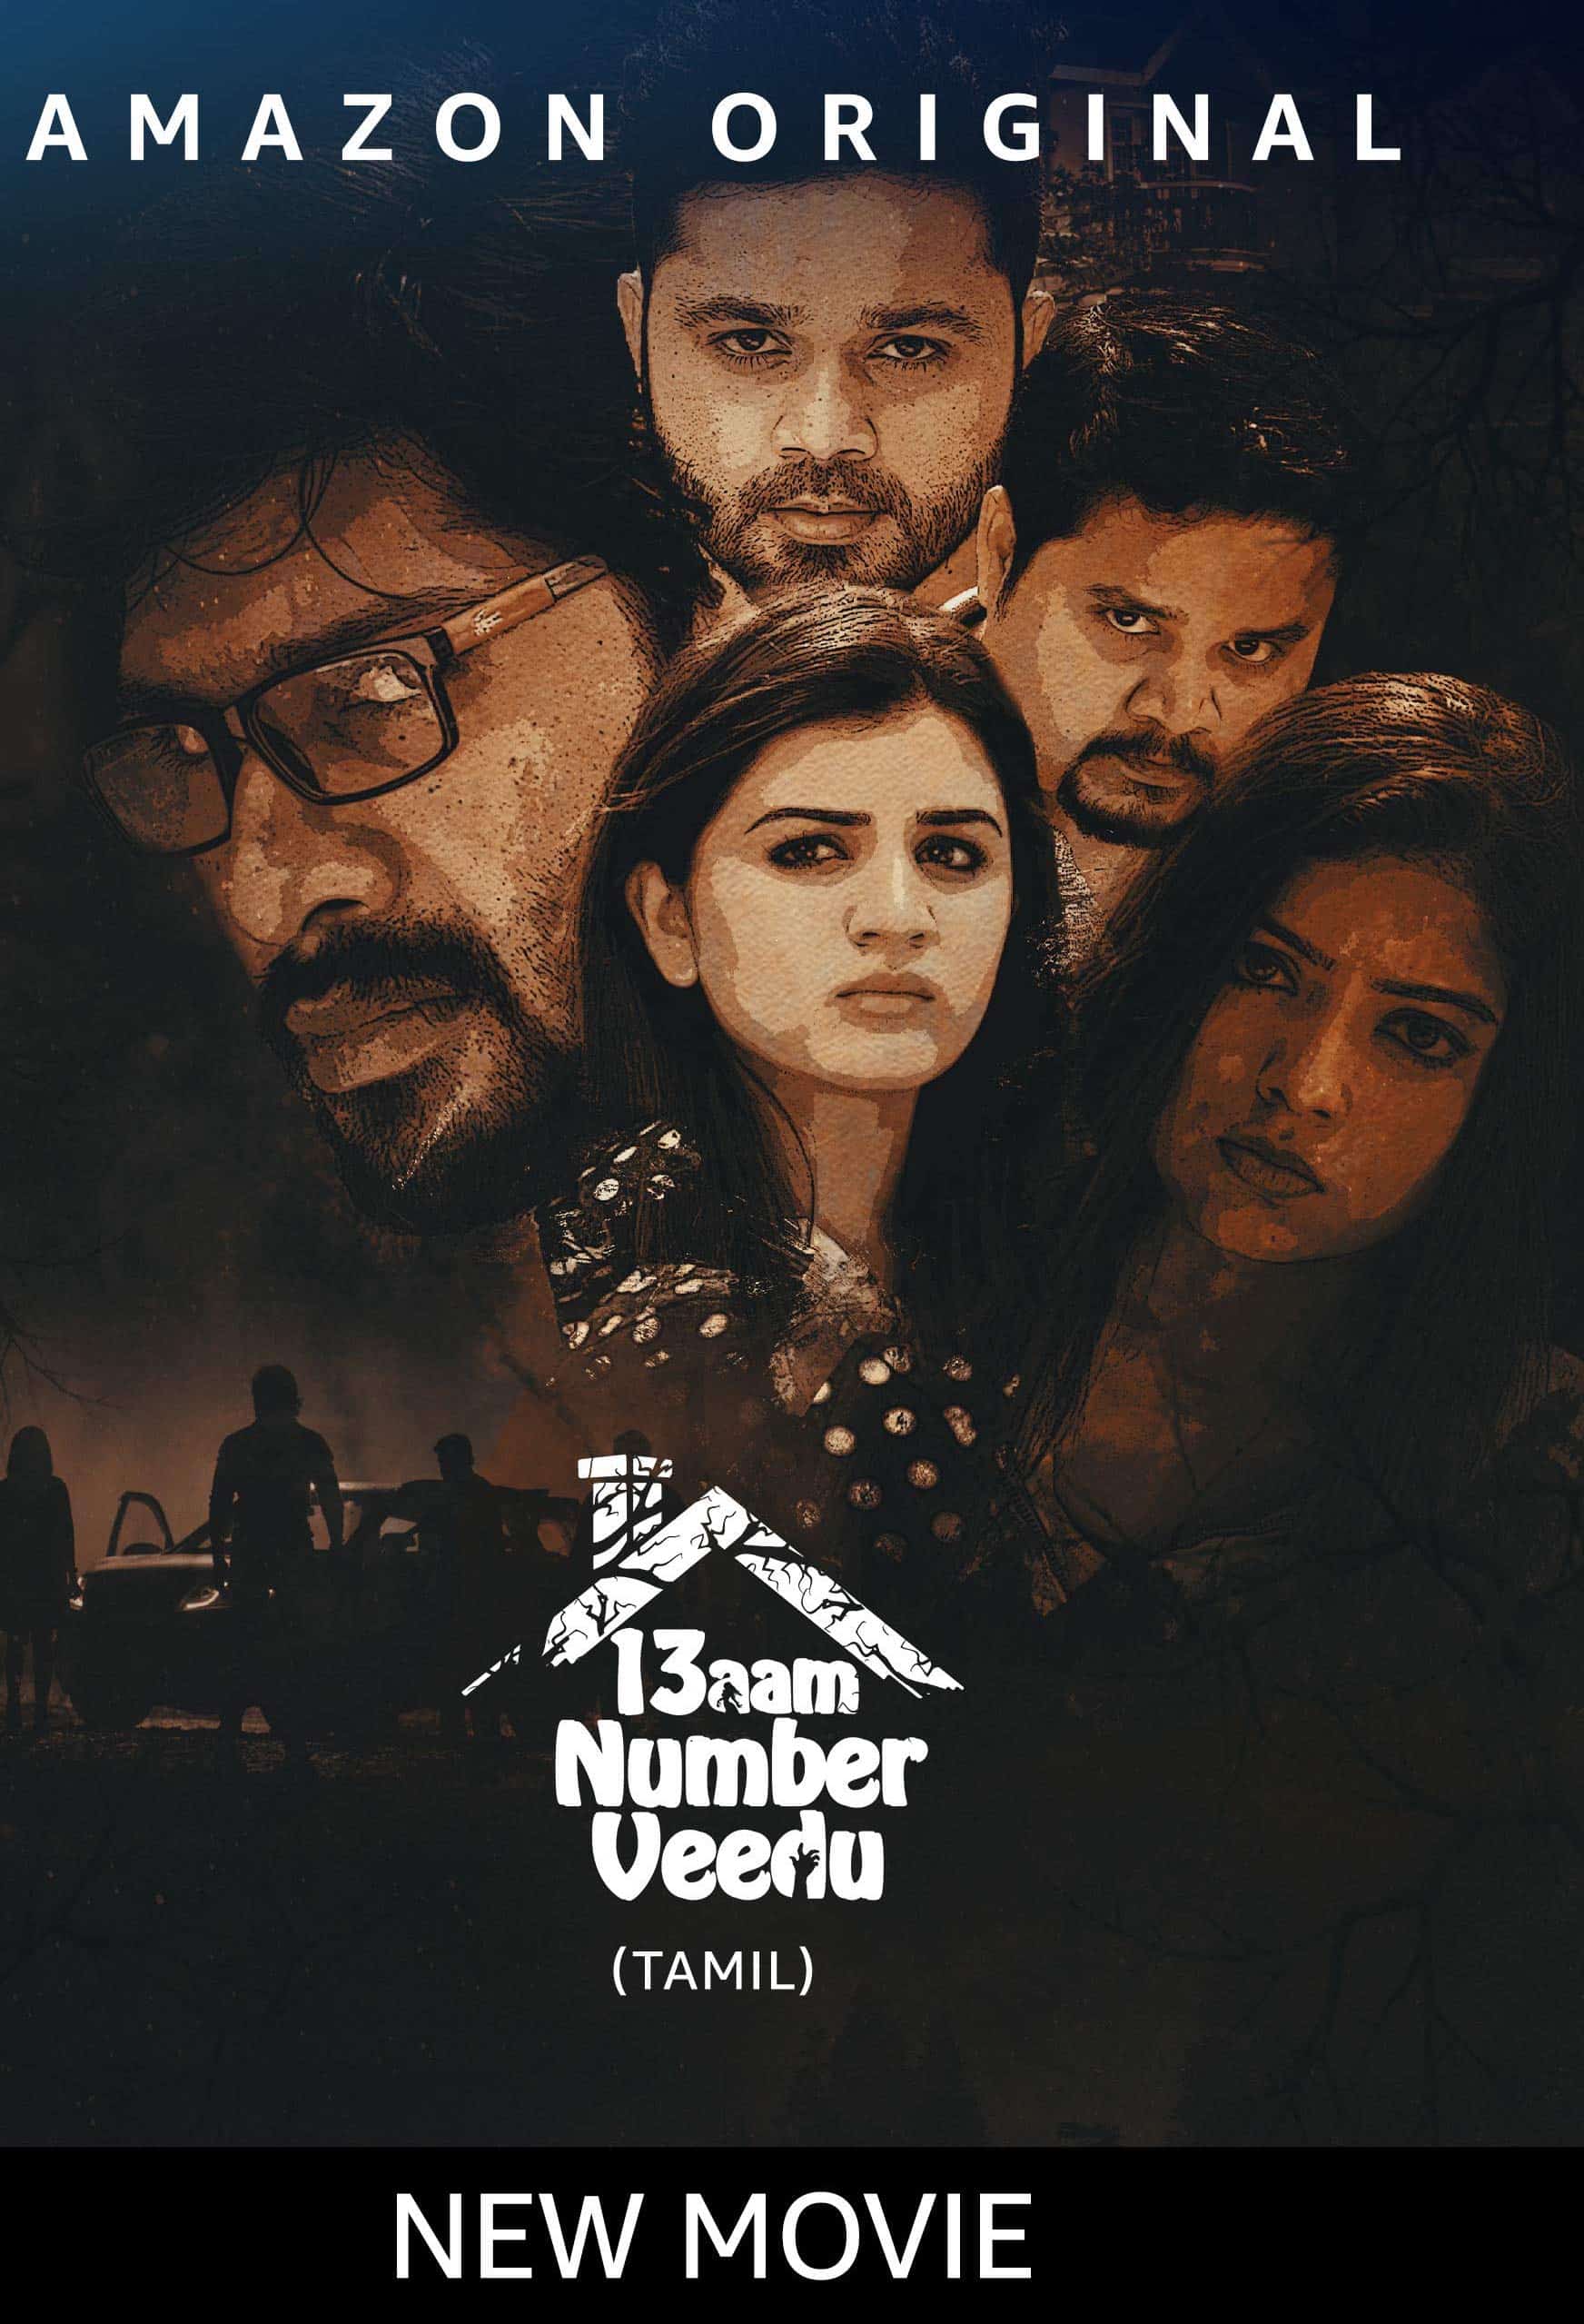 13aam Number Veedu 2020 Tamil Horror Movie Online